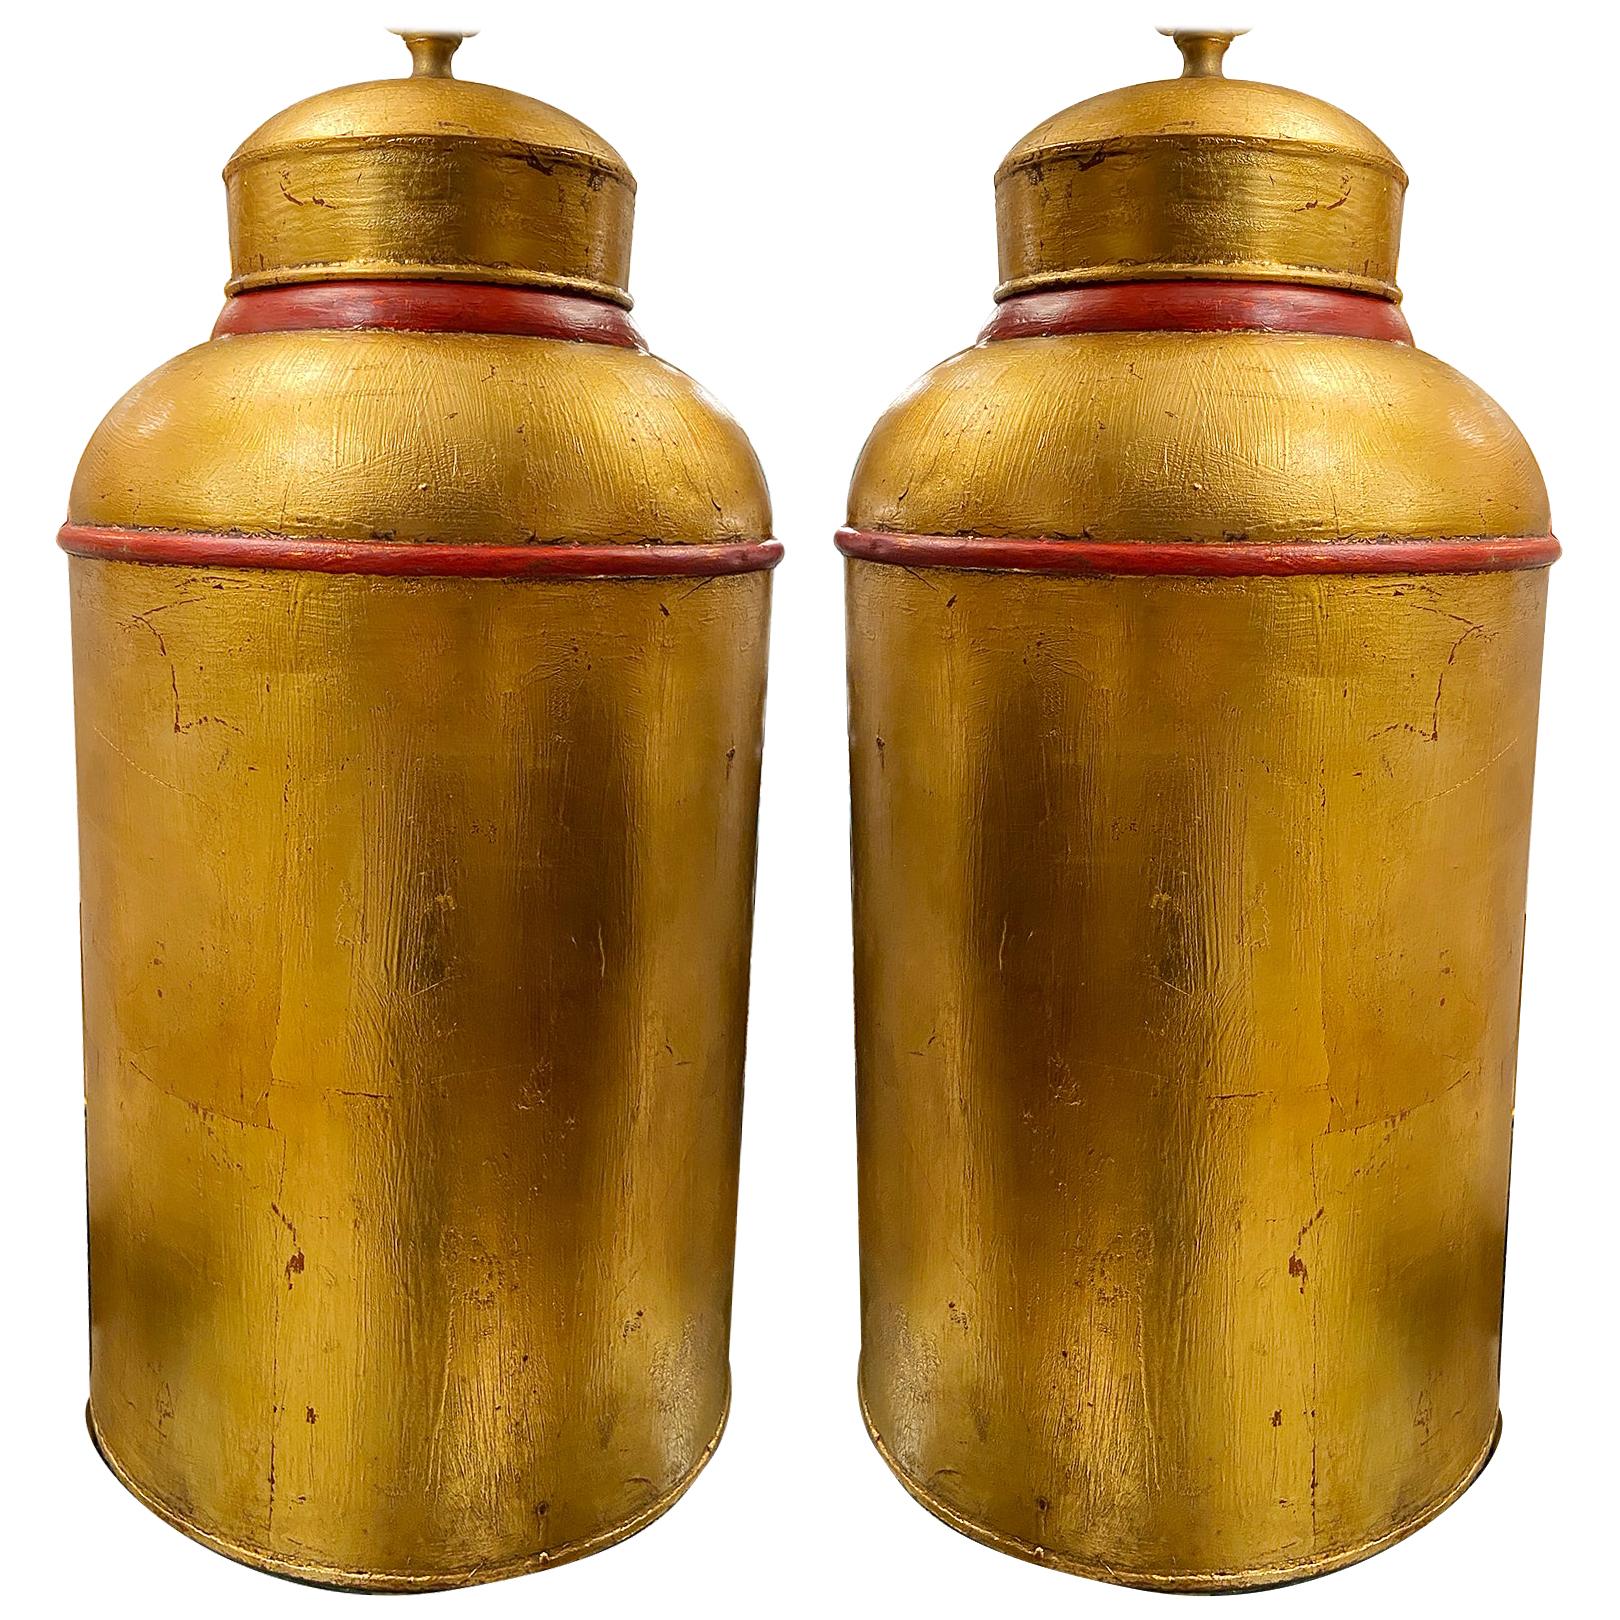 Lampes boîte à thé dorée avec détails rouges